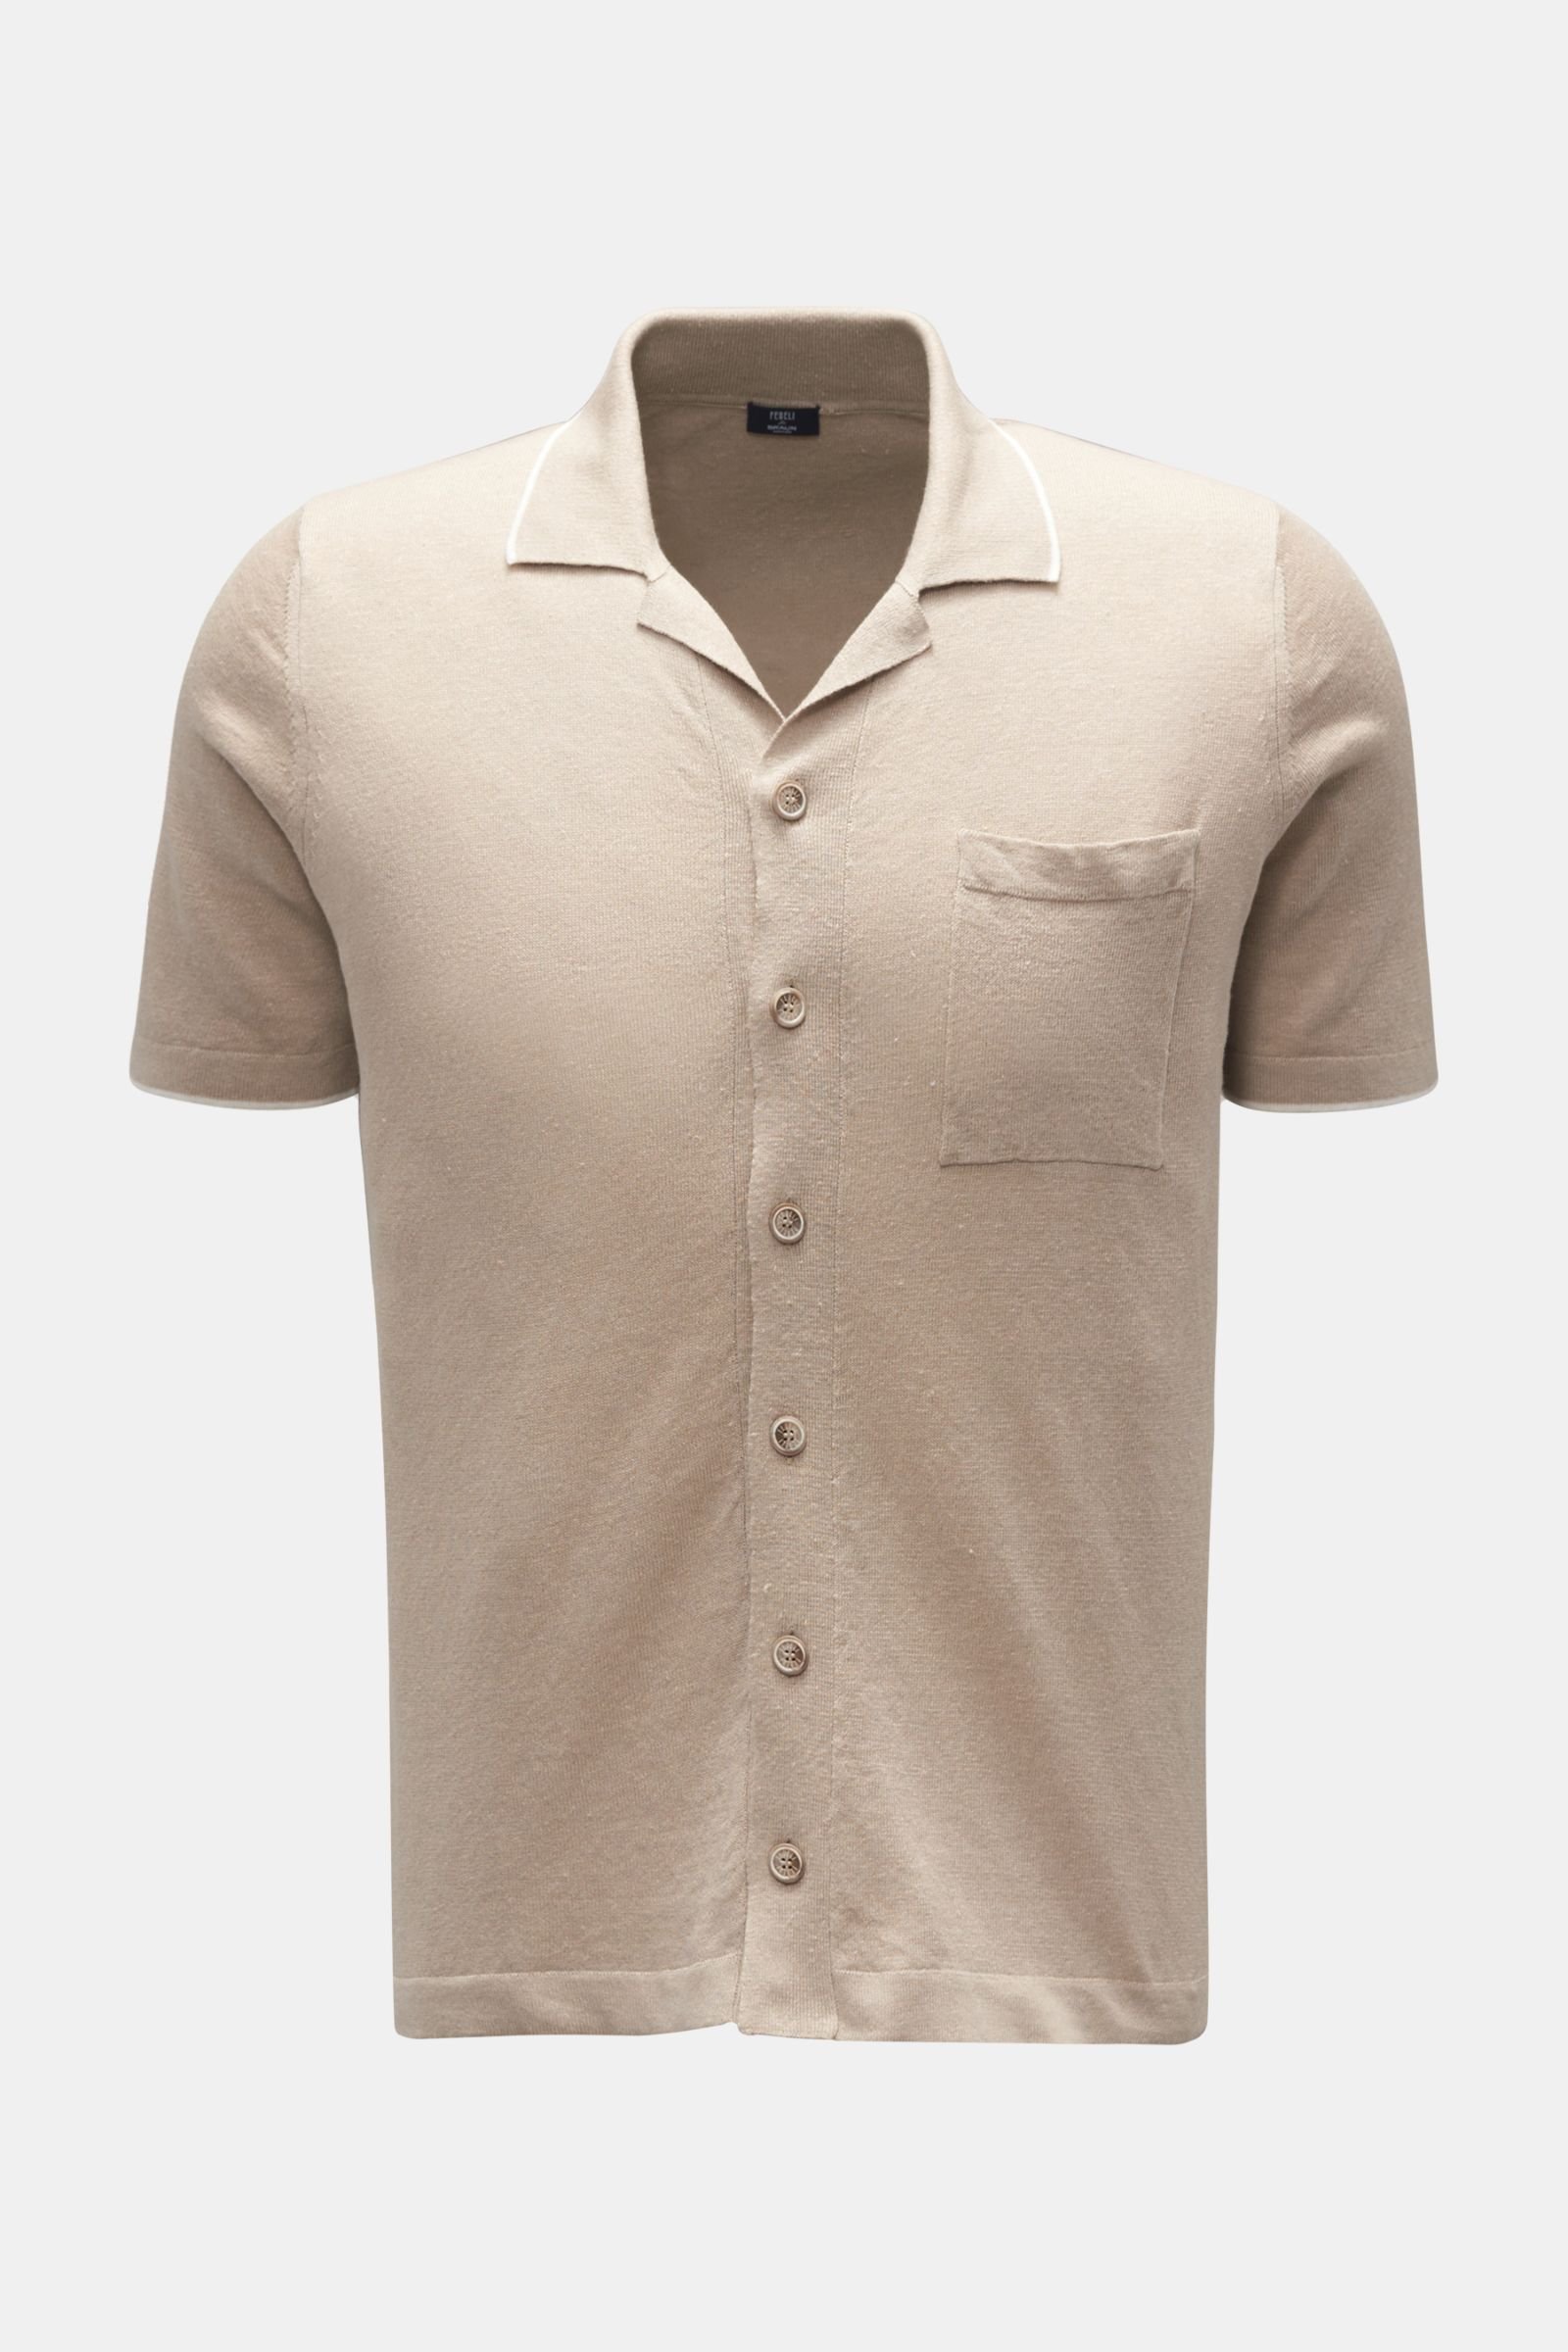 Short sleeve knit shirt 'Jazz' Cuban collar beige